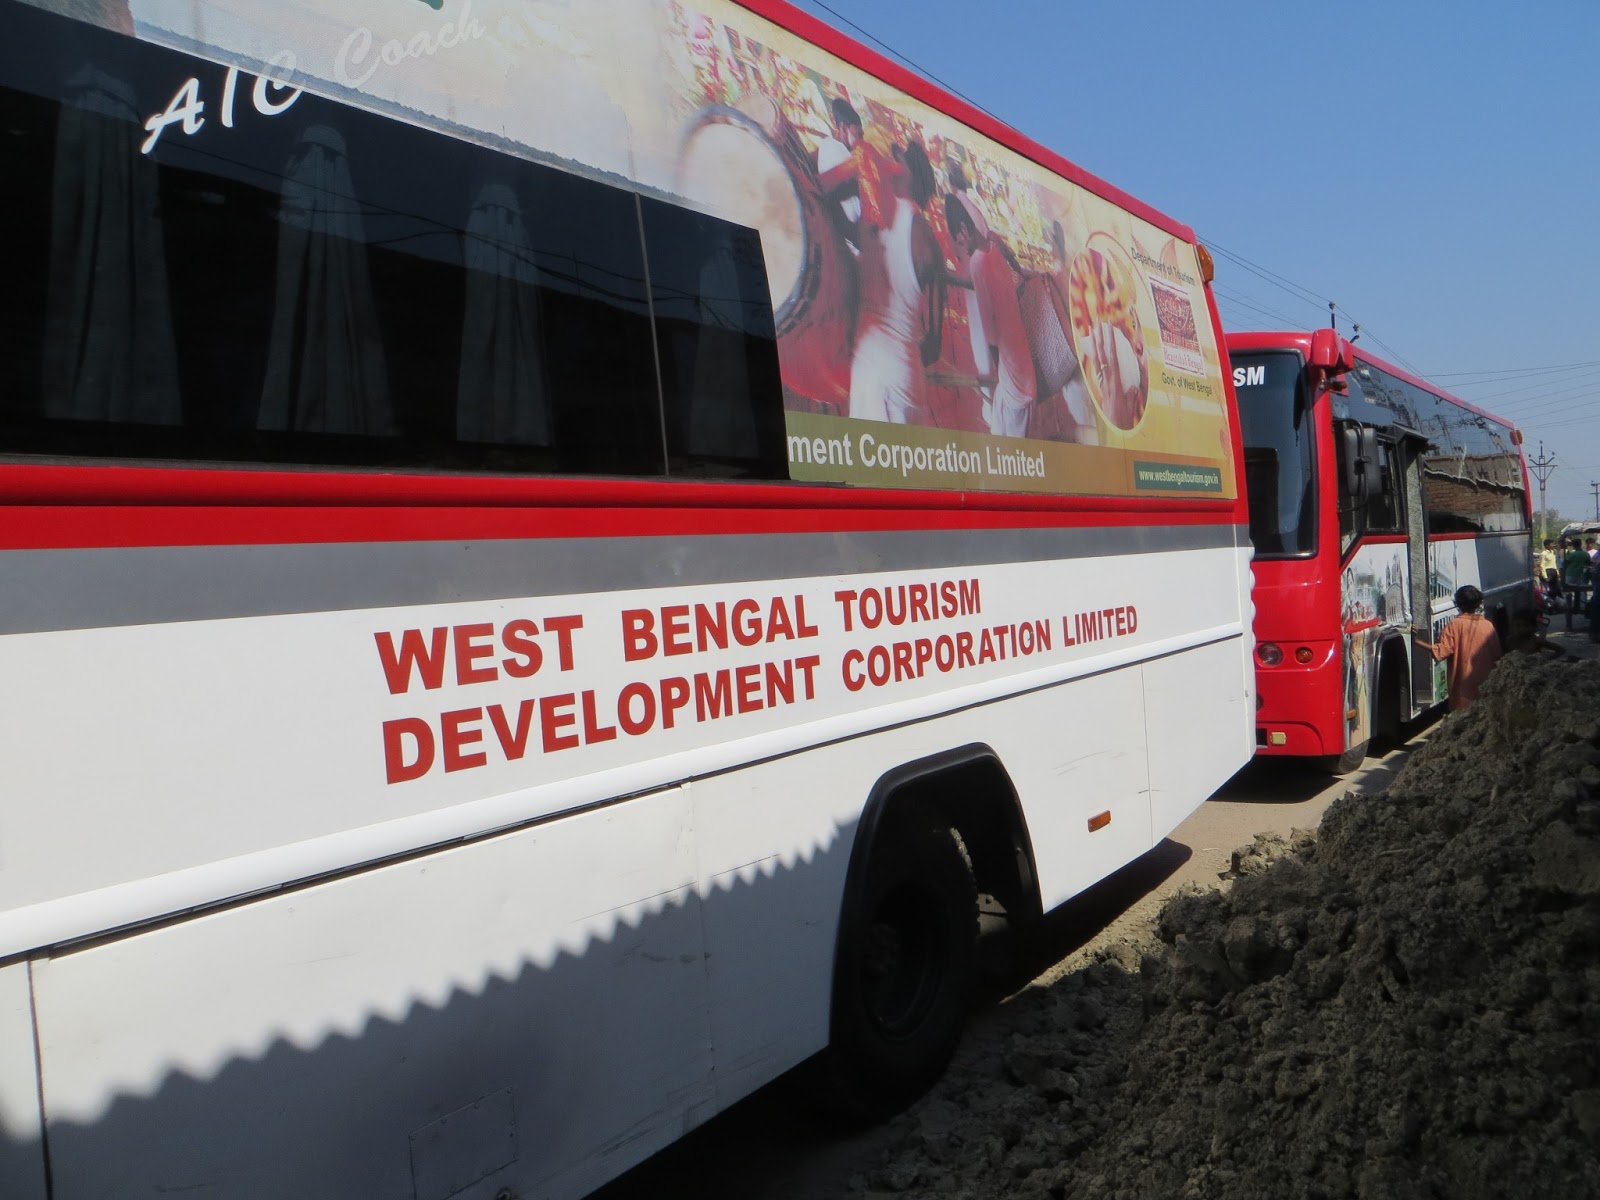 west bengal tourism development corporation ltd. reviews